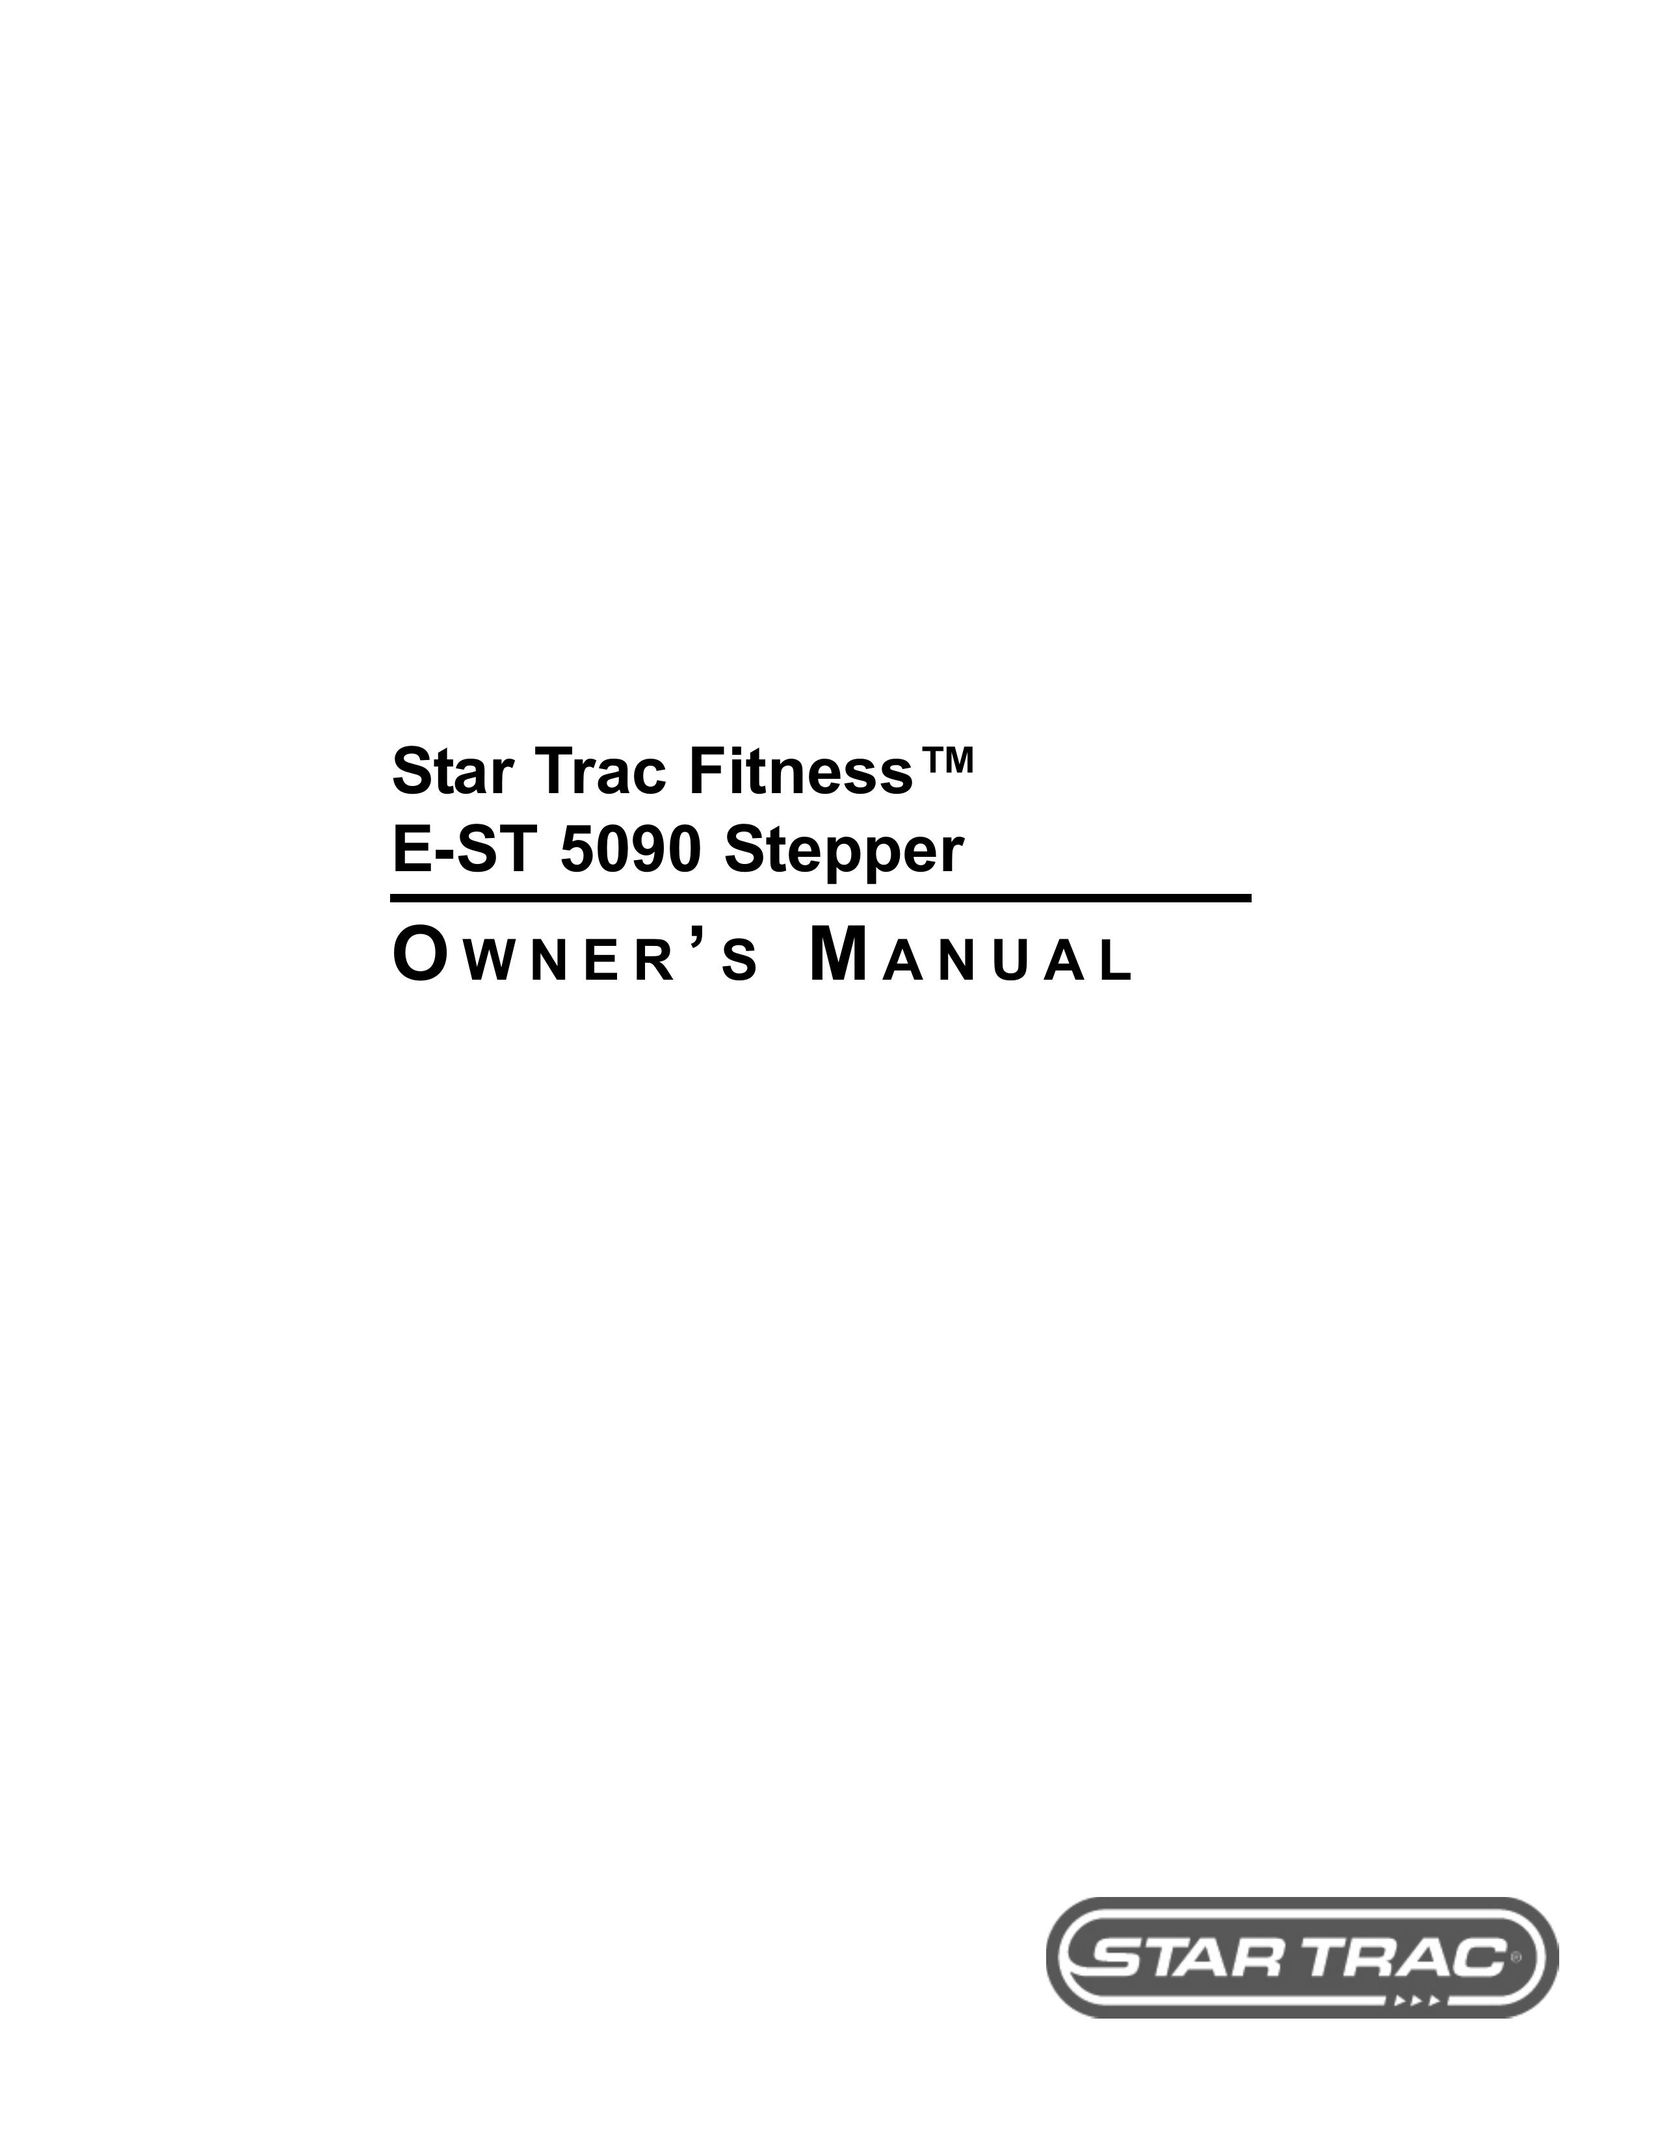 Star Trac E-ST 5090 Stepper Machine User Manual